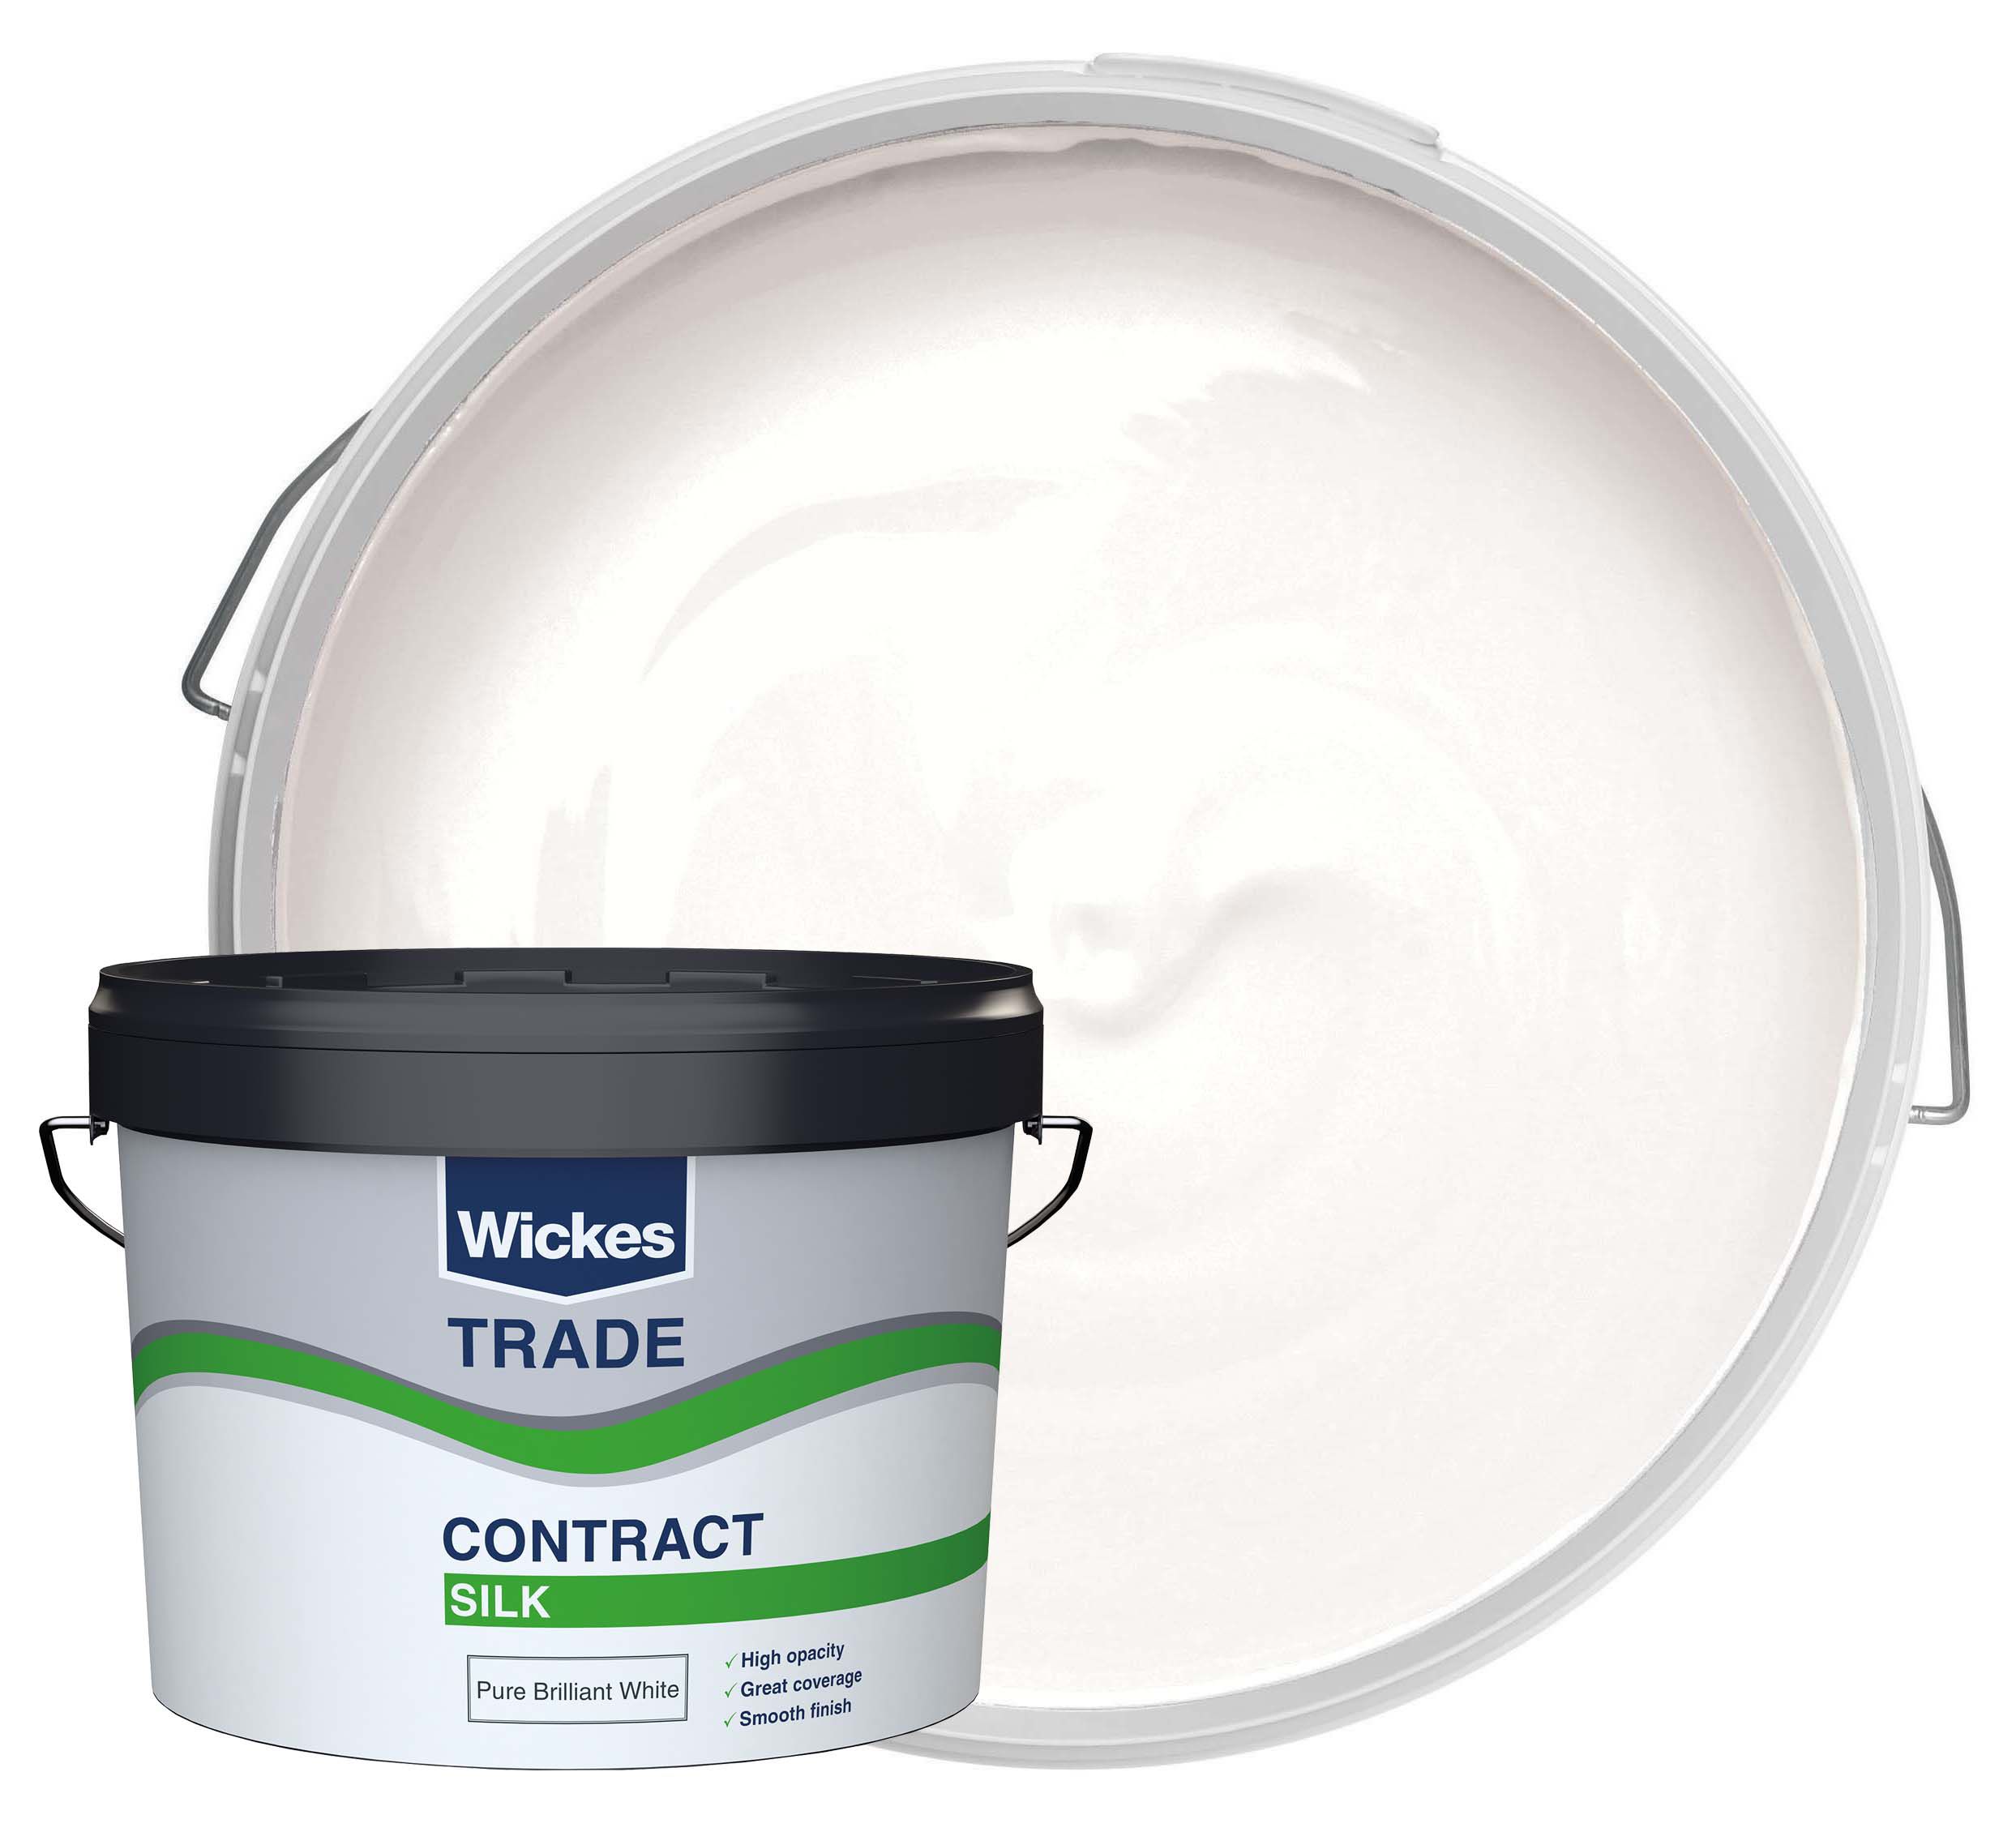 Image of Wickes Trade Contract Silk Emulsion Paint - Pure Brilliant White - 10L